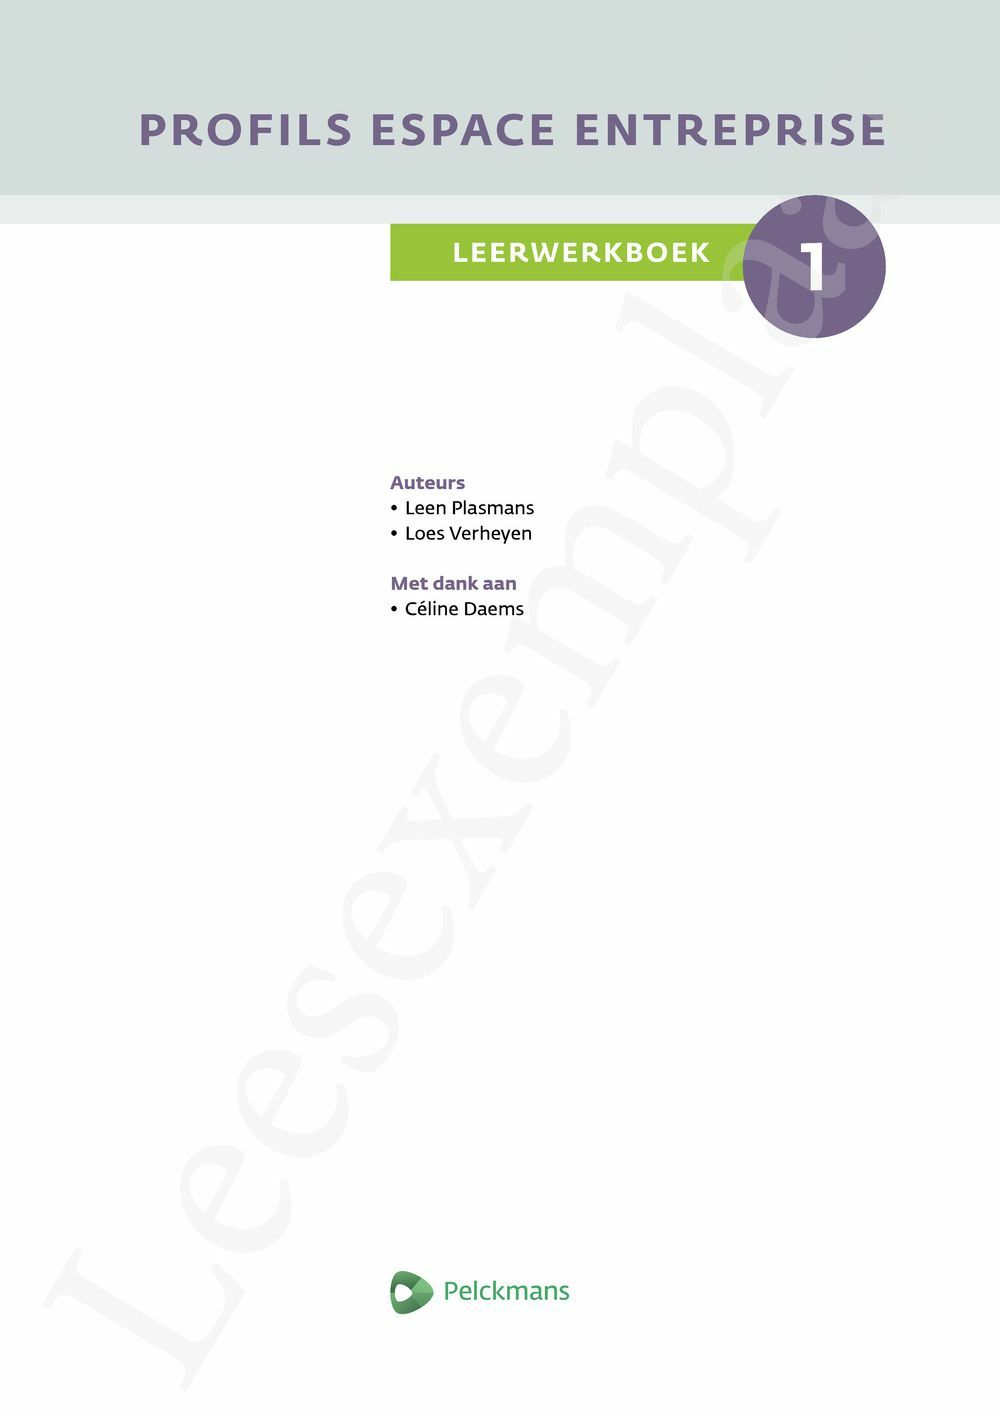 Preview: Profils Espace entreprise leerwerkboek